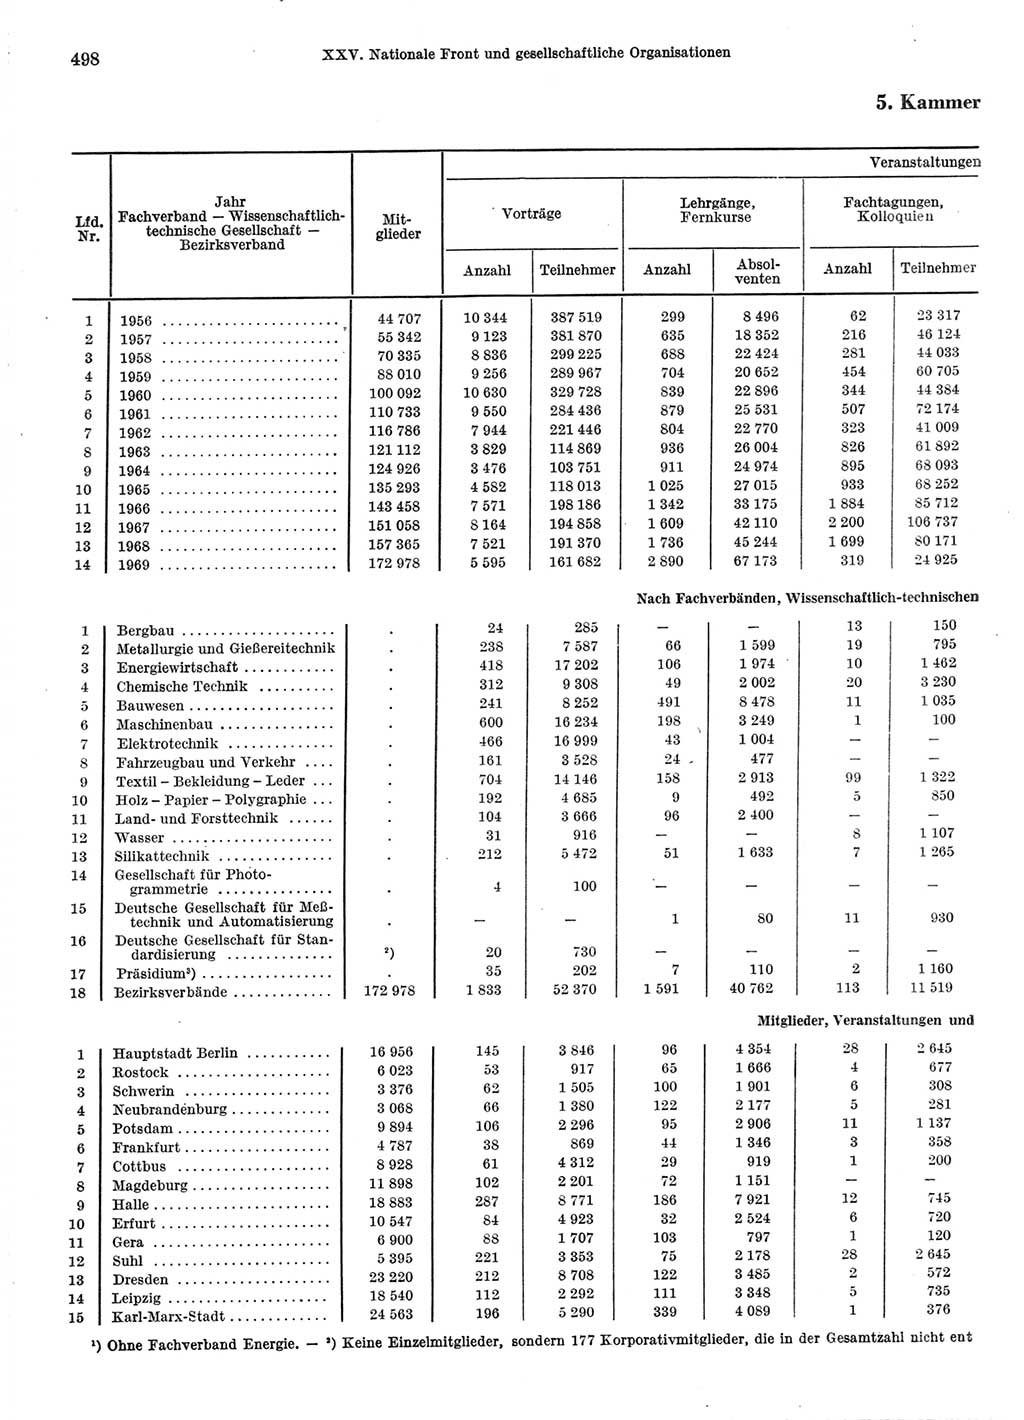 Statistisches Jahrbuch der Deutschen Demokratischen Republik (DDR) 1970, Seite 498 (Stat. Jb. DDR 1970, S. 498)